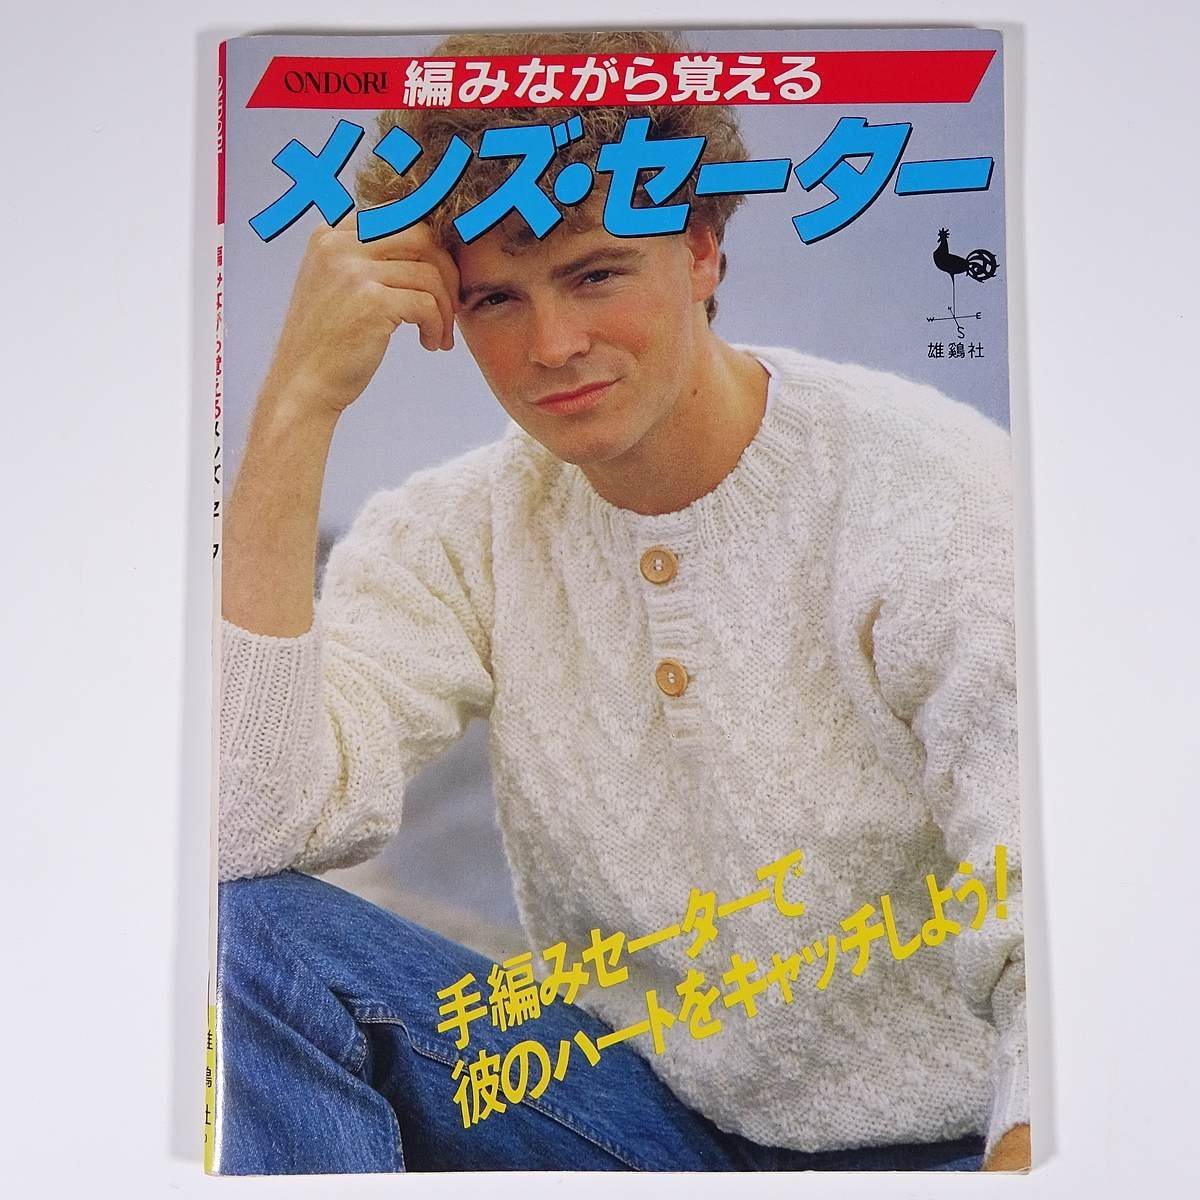 編みながら覚える メンズ・セーター ONDORI 雄鶏社 1983 大型本 手芸 編物 あみもの_画像1